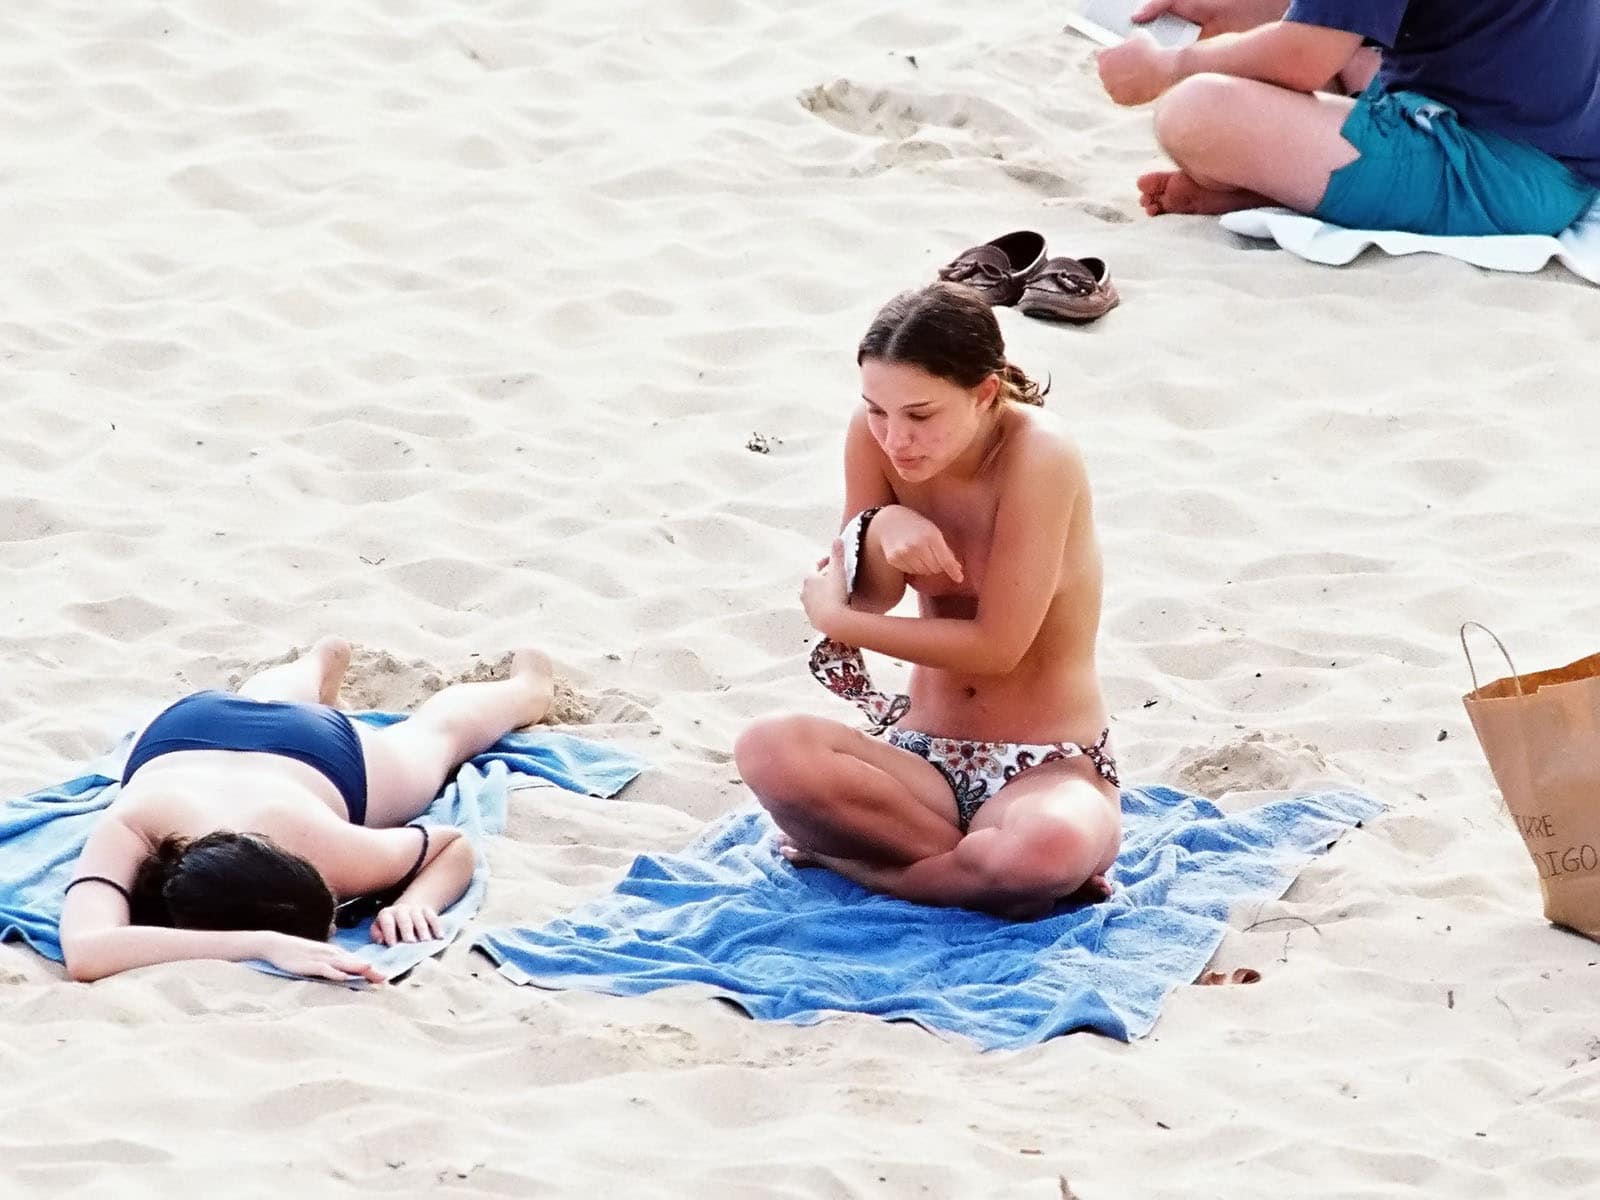 The sensual Natalie Portman hiding her boobs at the beach